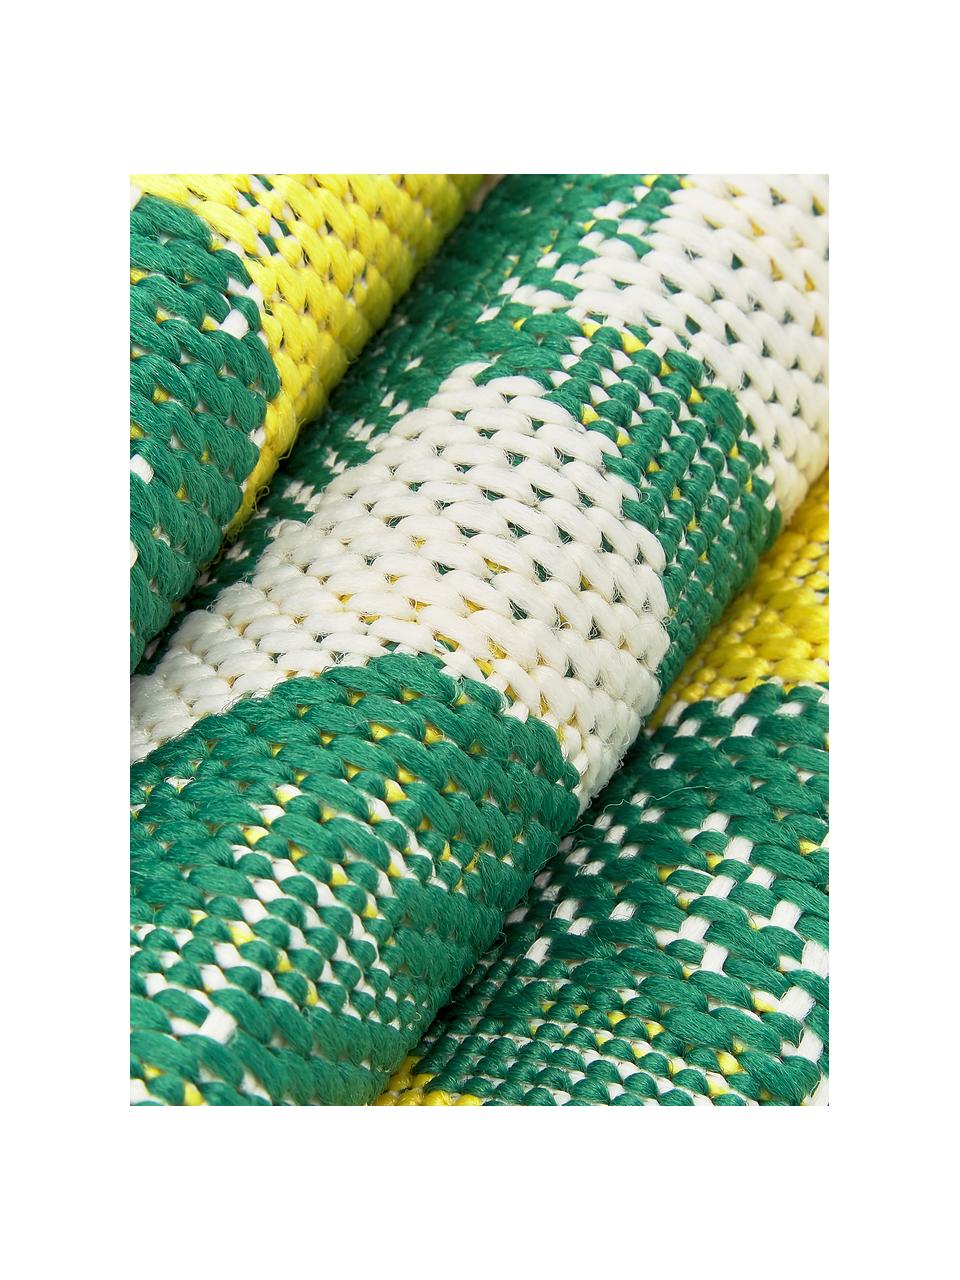 Vnitřní a venkovní koberec s potiskem s citróny Limonia, 86 % polypropylen, 14 % polyester, Krémově bílá, žlutá, zelená, Š 160 cm, D 230 cm (velikost M)